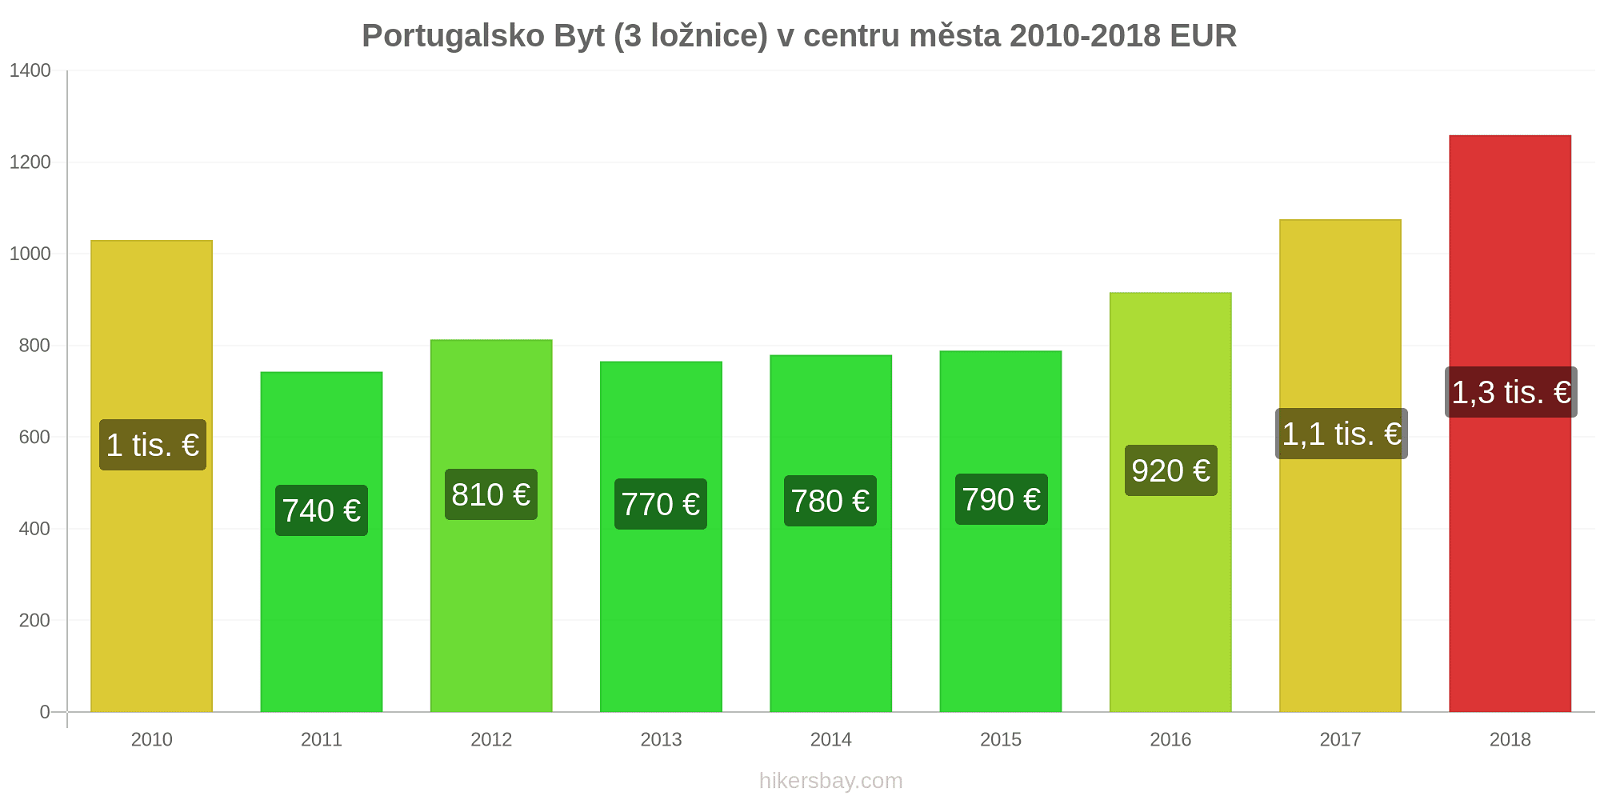 Portugalsko změny cen Byt (3 ložnice) v centru města hikersbay.com